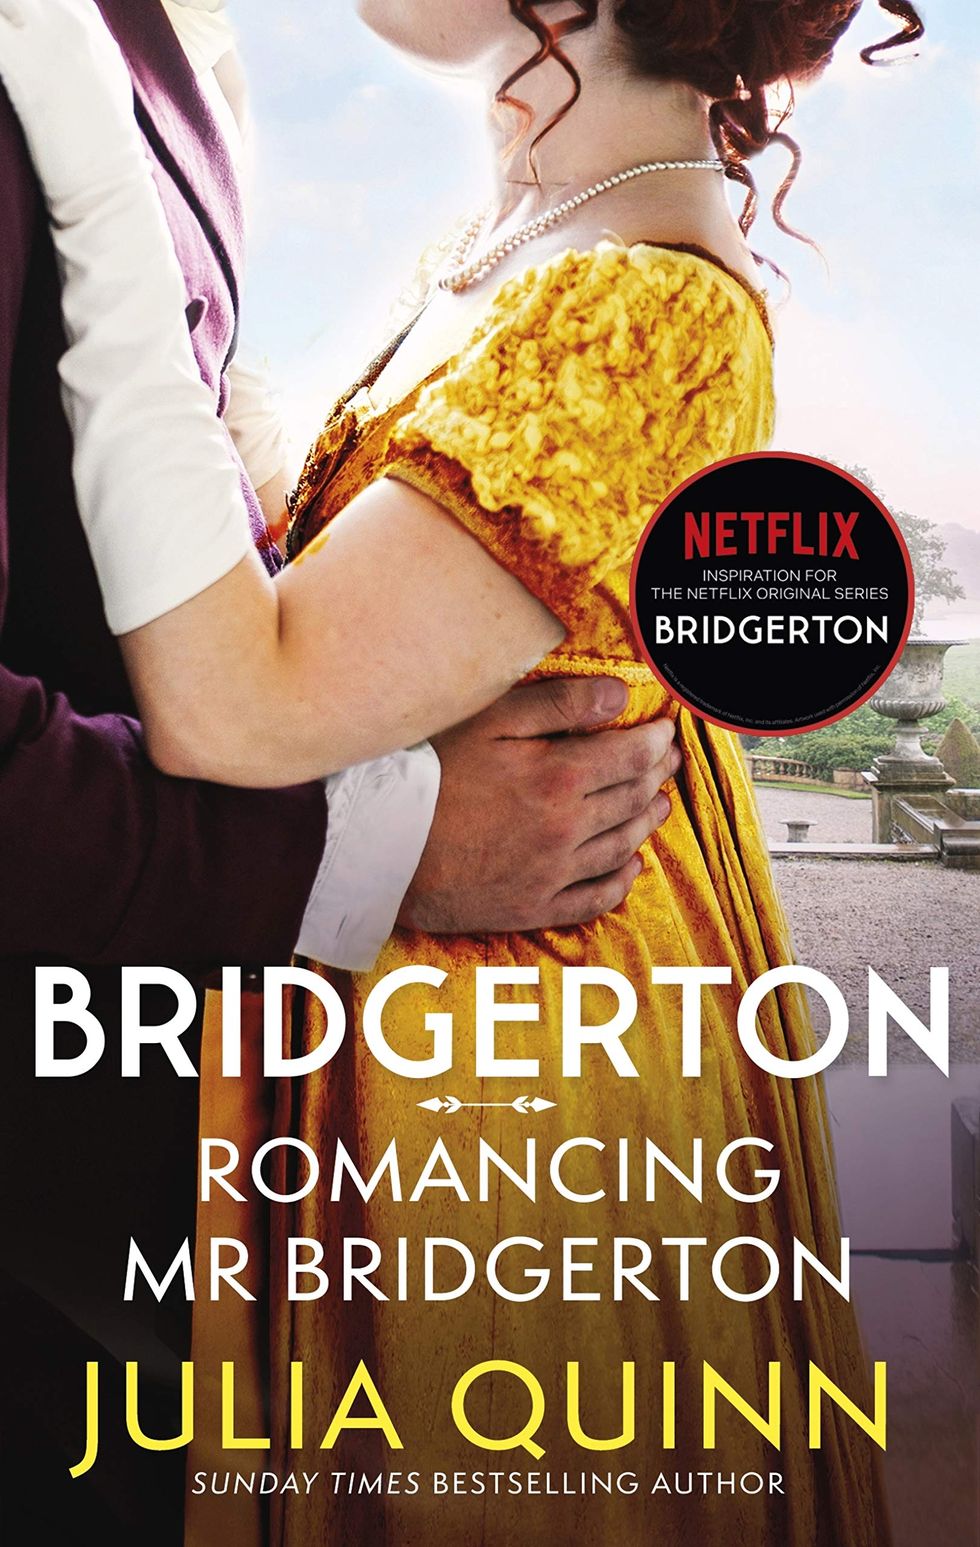 Book four: Romancing Mr Bridgerton by Julia Quinn